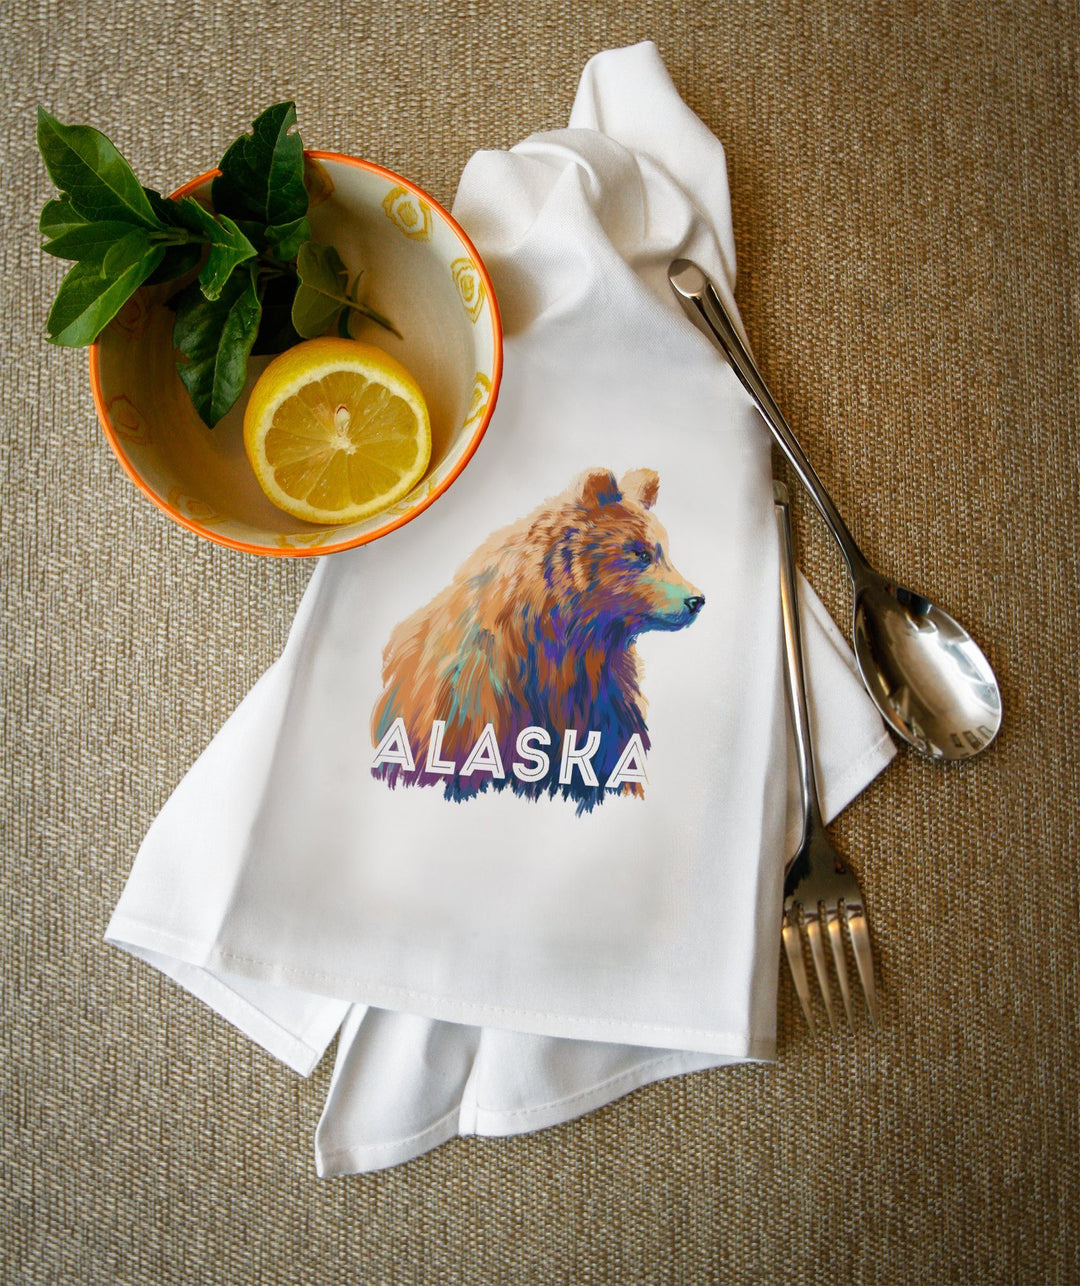 Alaska, Grizzly Bear, Vivid Watercolor, Contour, Lantern Press Artwork, Towels and Aprons Kitchen Lantern Press 